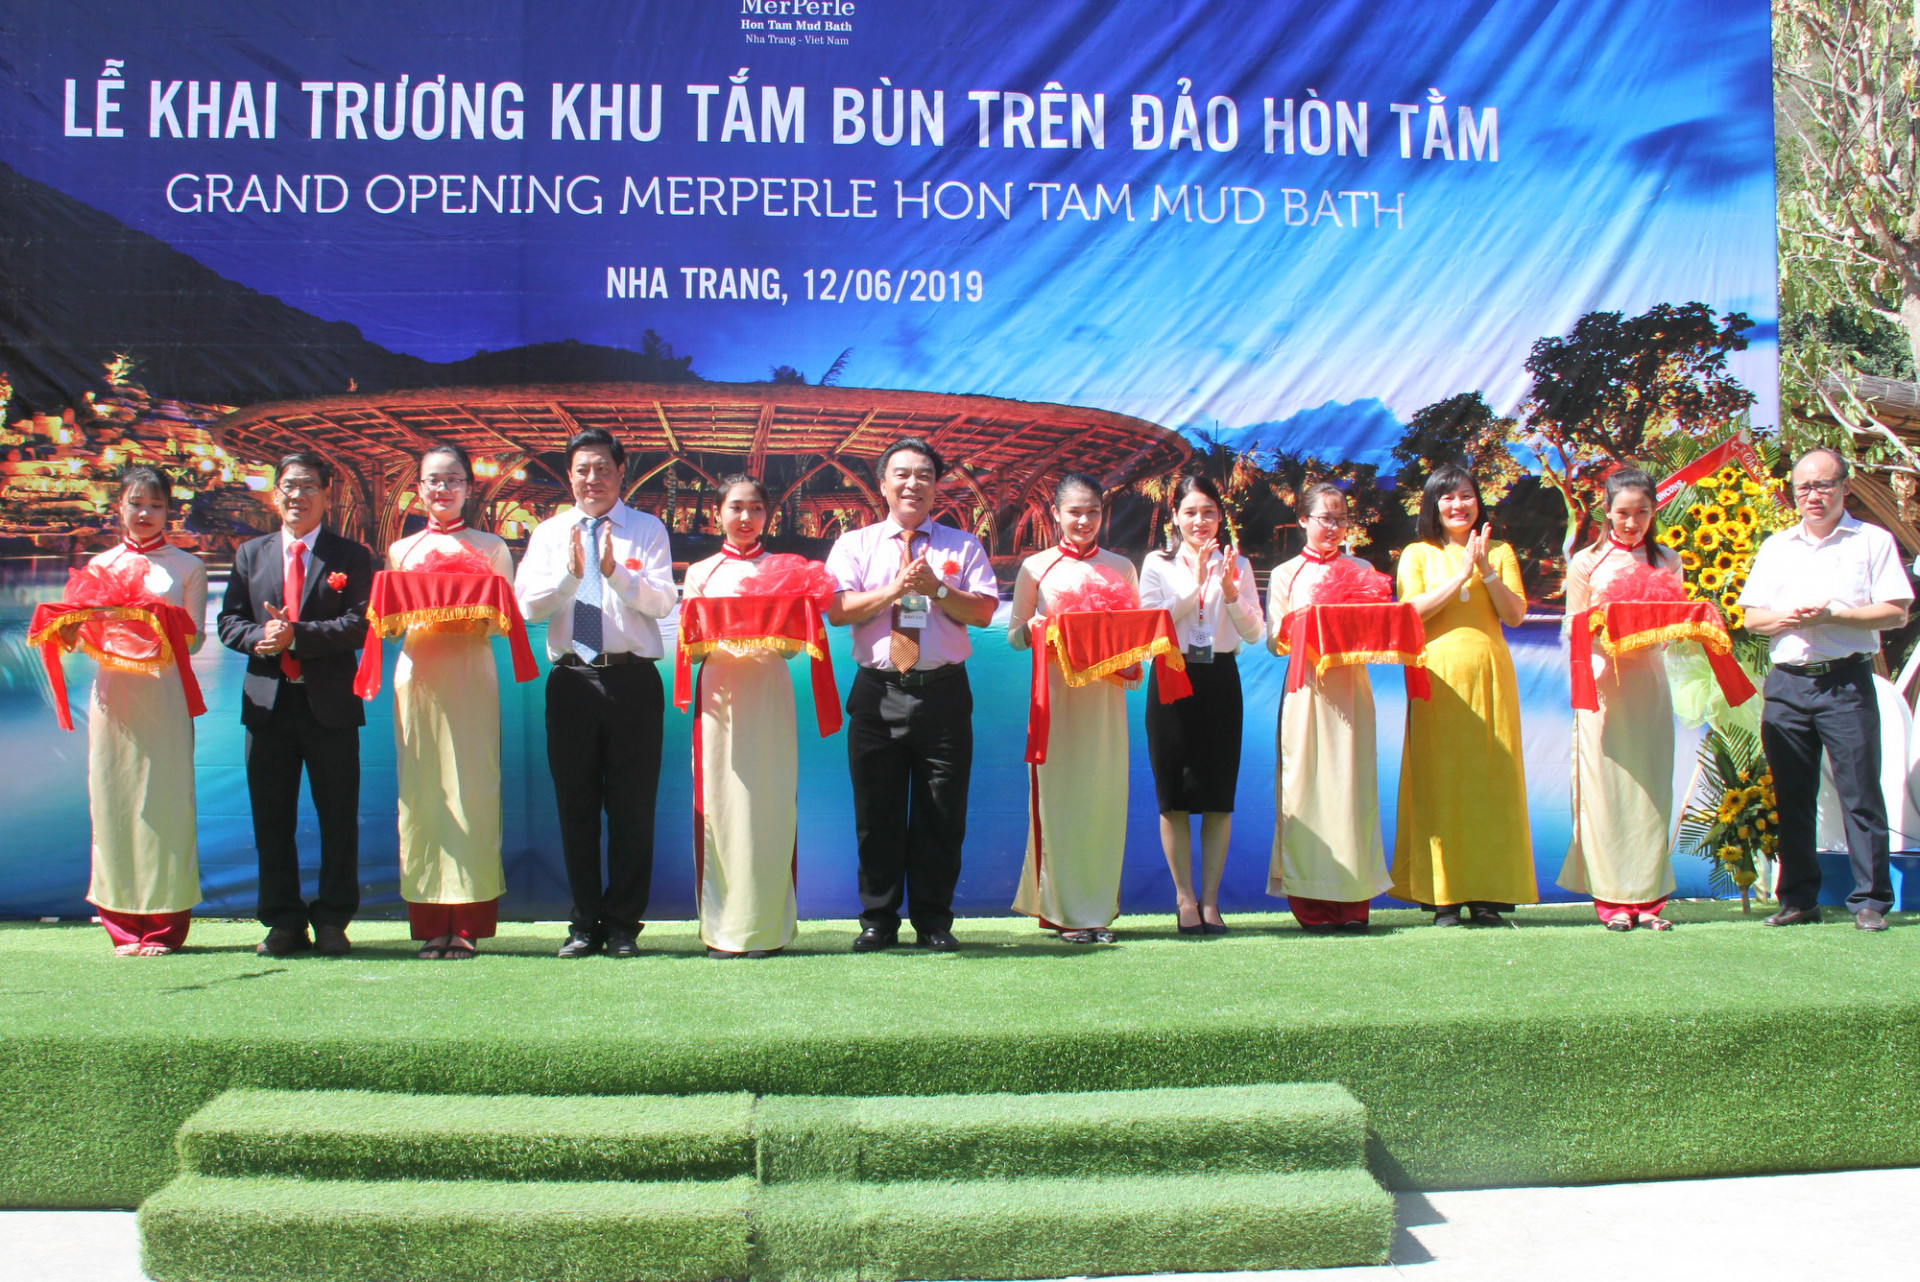  Lãnh đạo Công ty cổ phần Hòn Tằm Biển Nha Trang và đại biểu cắt băng khai trương Khu tắm bùn khoáng trên đảo Hòn Tằm